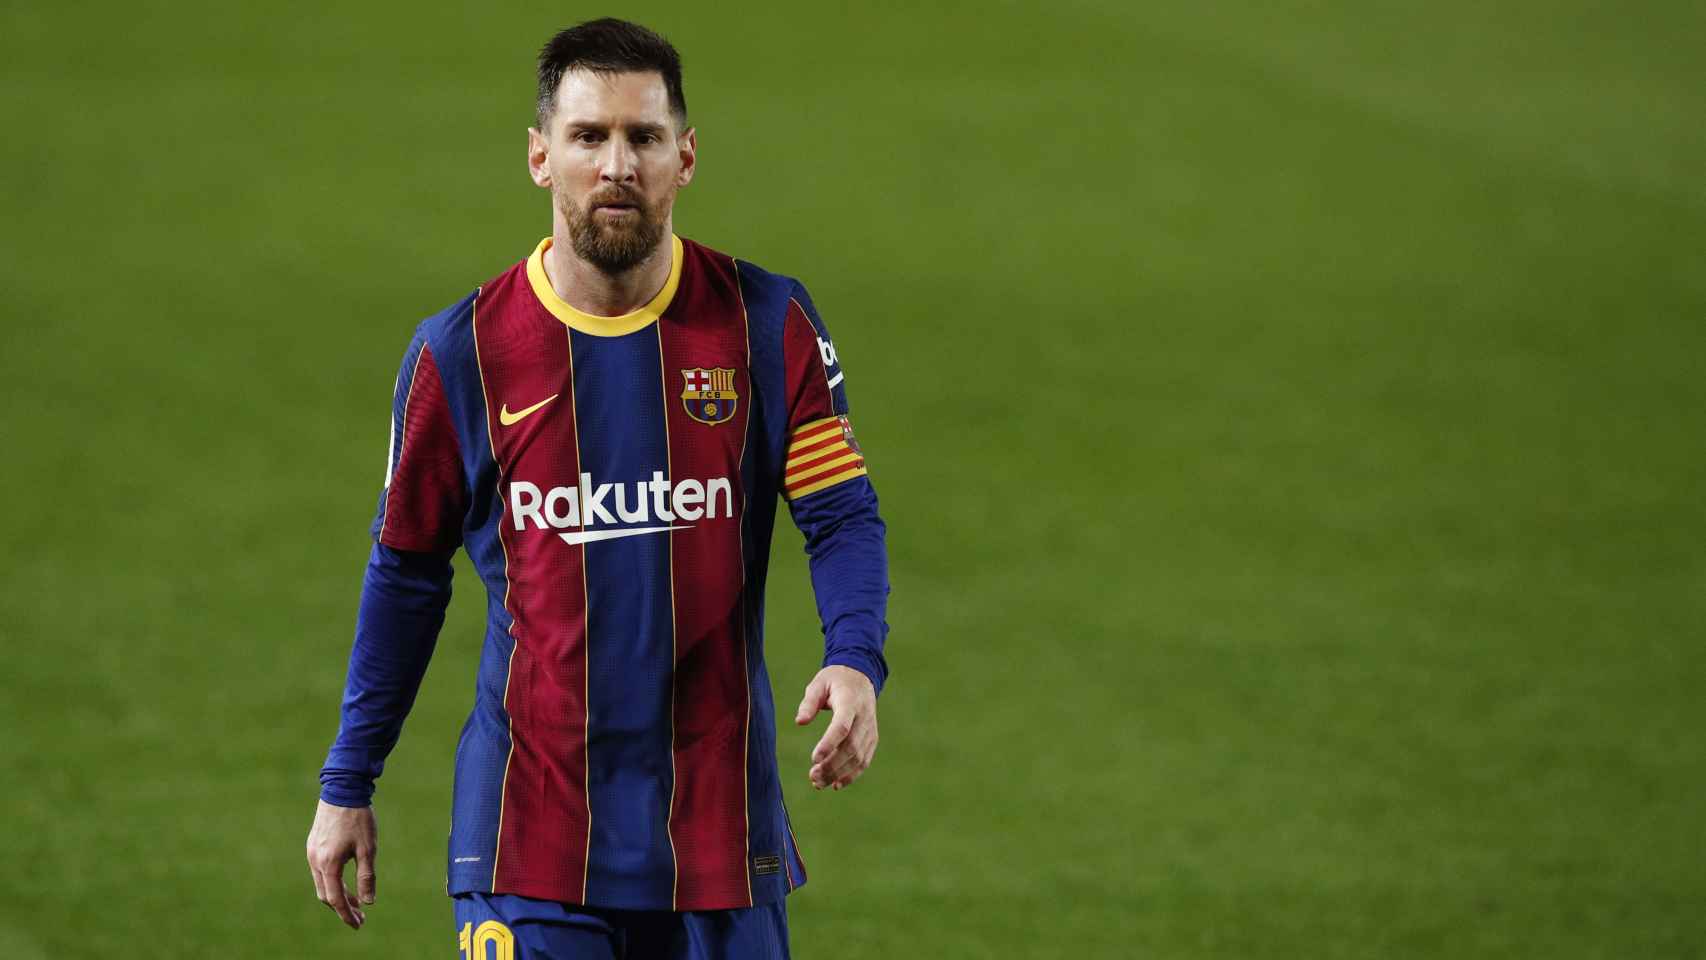 Leo Messi, con el Barcelona